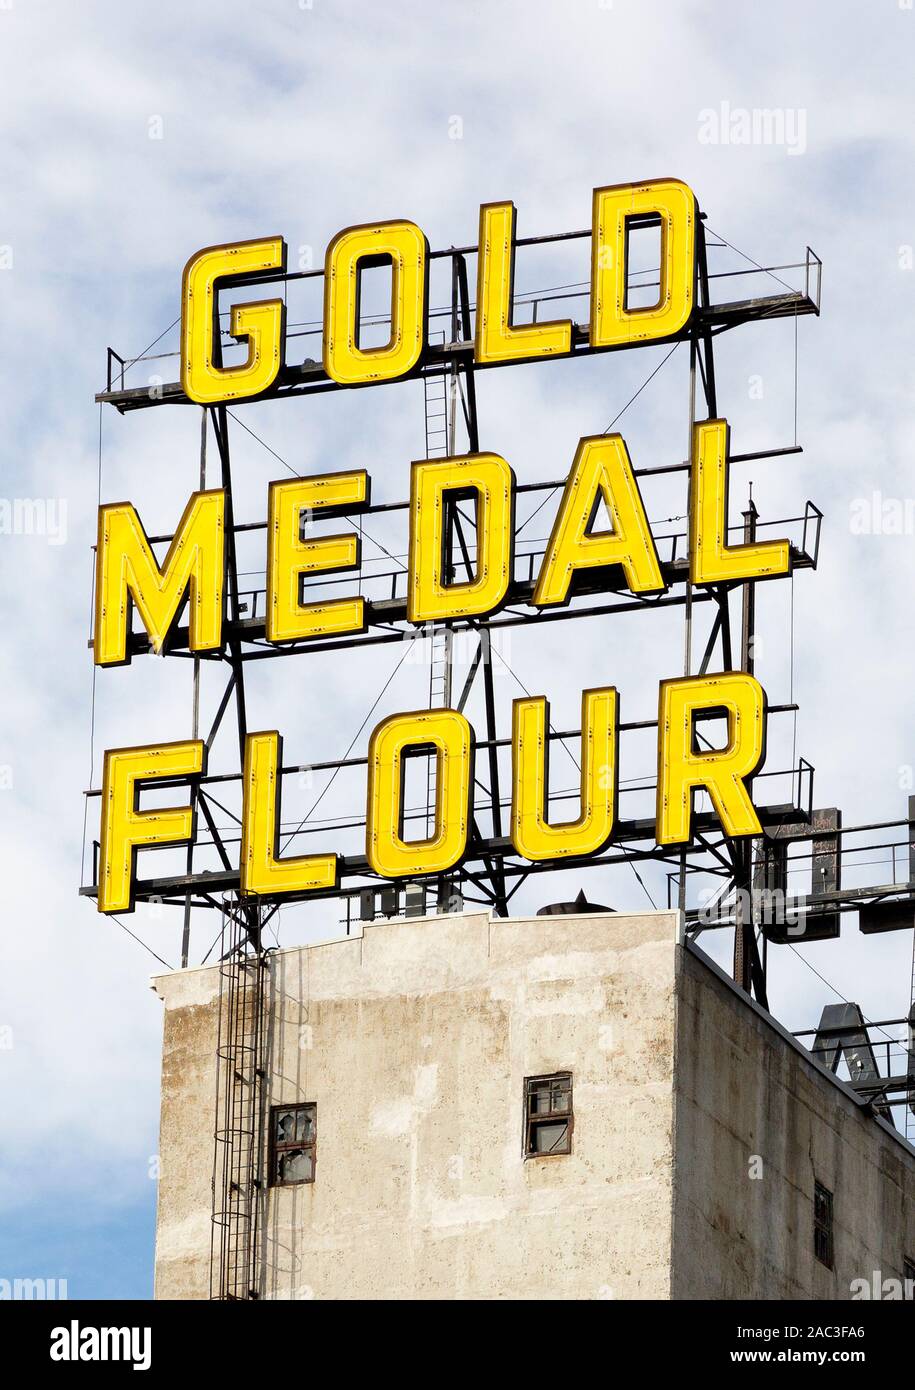 La farine jaune Médaille d'enseignes au néon au-dessus de silos à grains qui font maintenant partie du musée de la ville de moulin historique dans le centre-ville de Minneapolis, Minnesota Banque D'Images